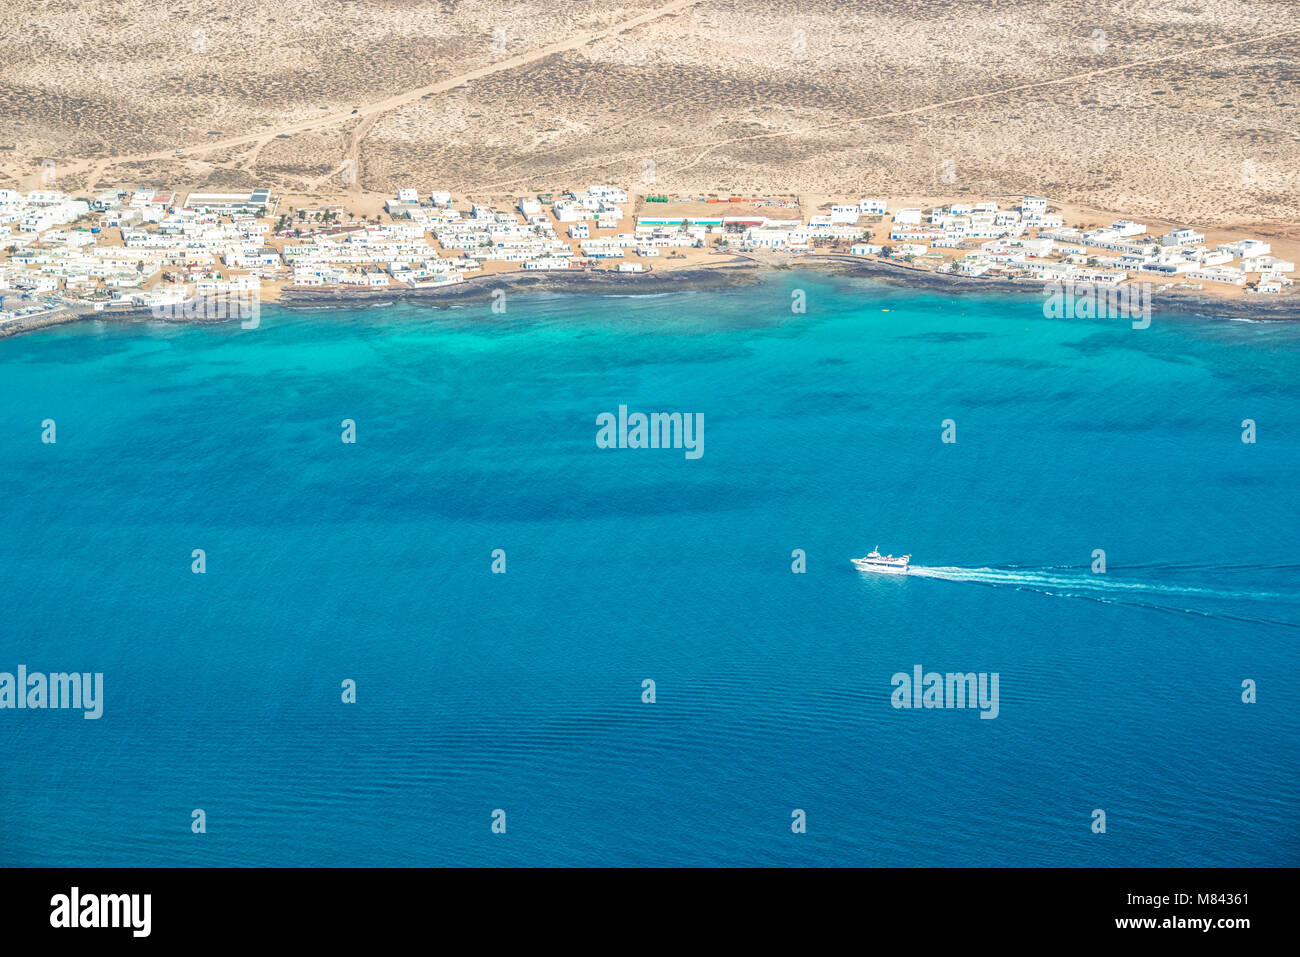 Vue aérienne d'un bateau dans l'océan avec la côte de la Graciose dans l'île de Lanzarote, îles Canaries, Espagne Banque D'Images